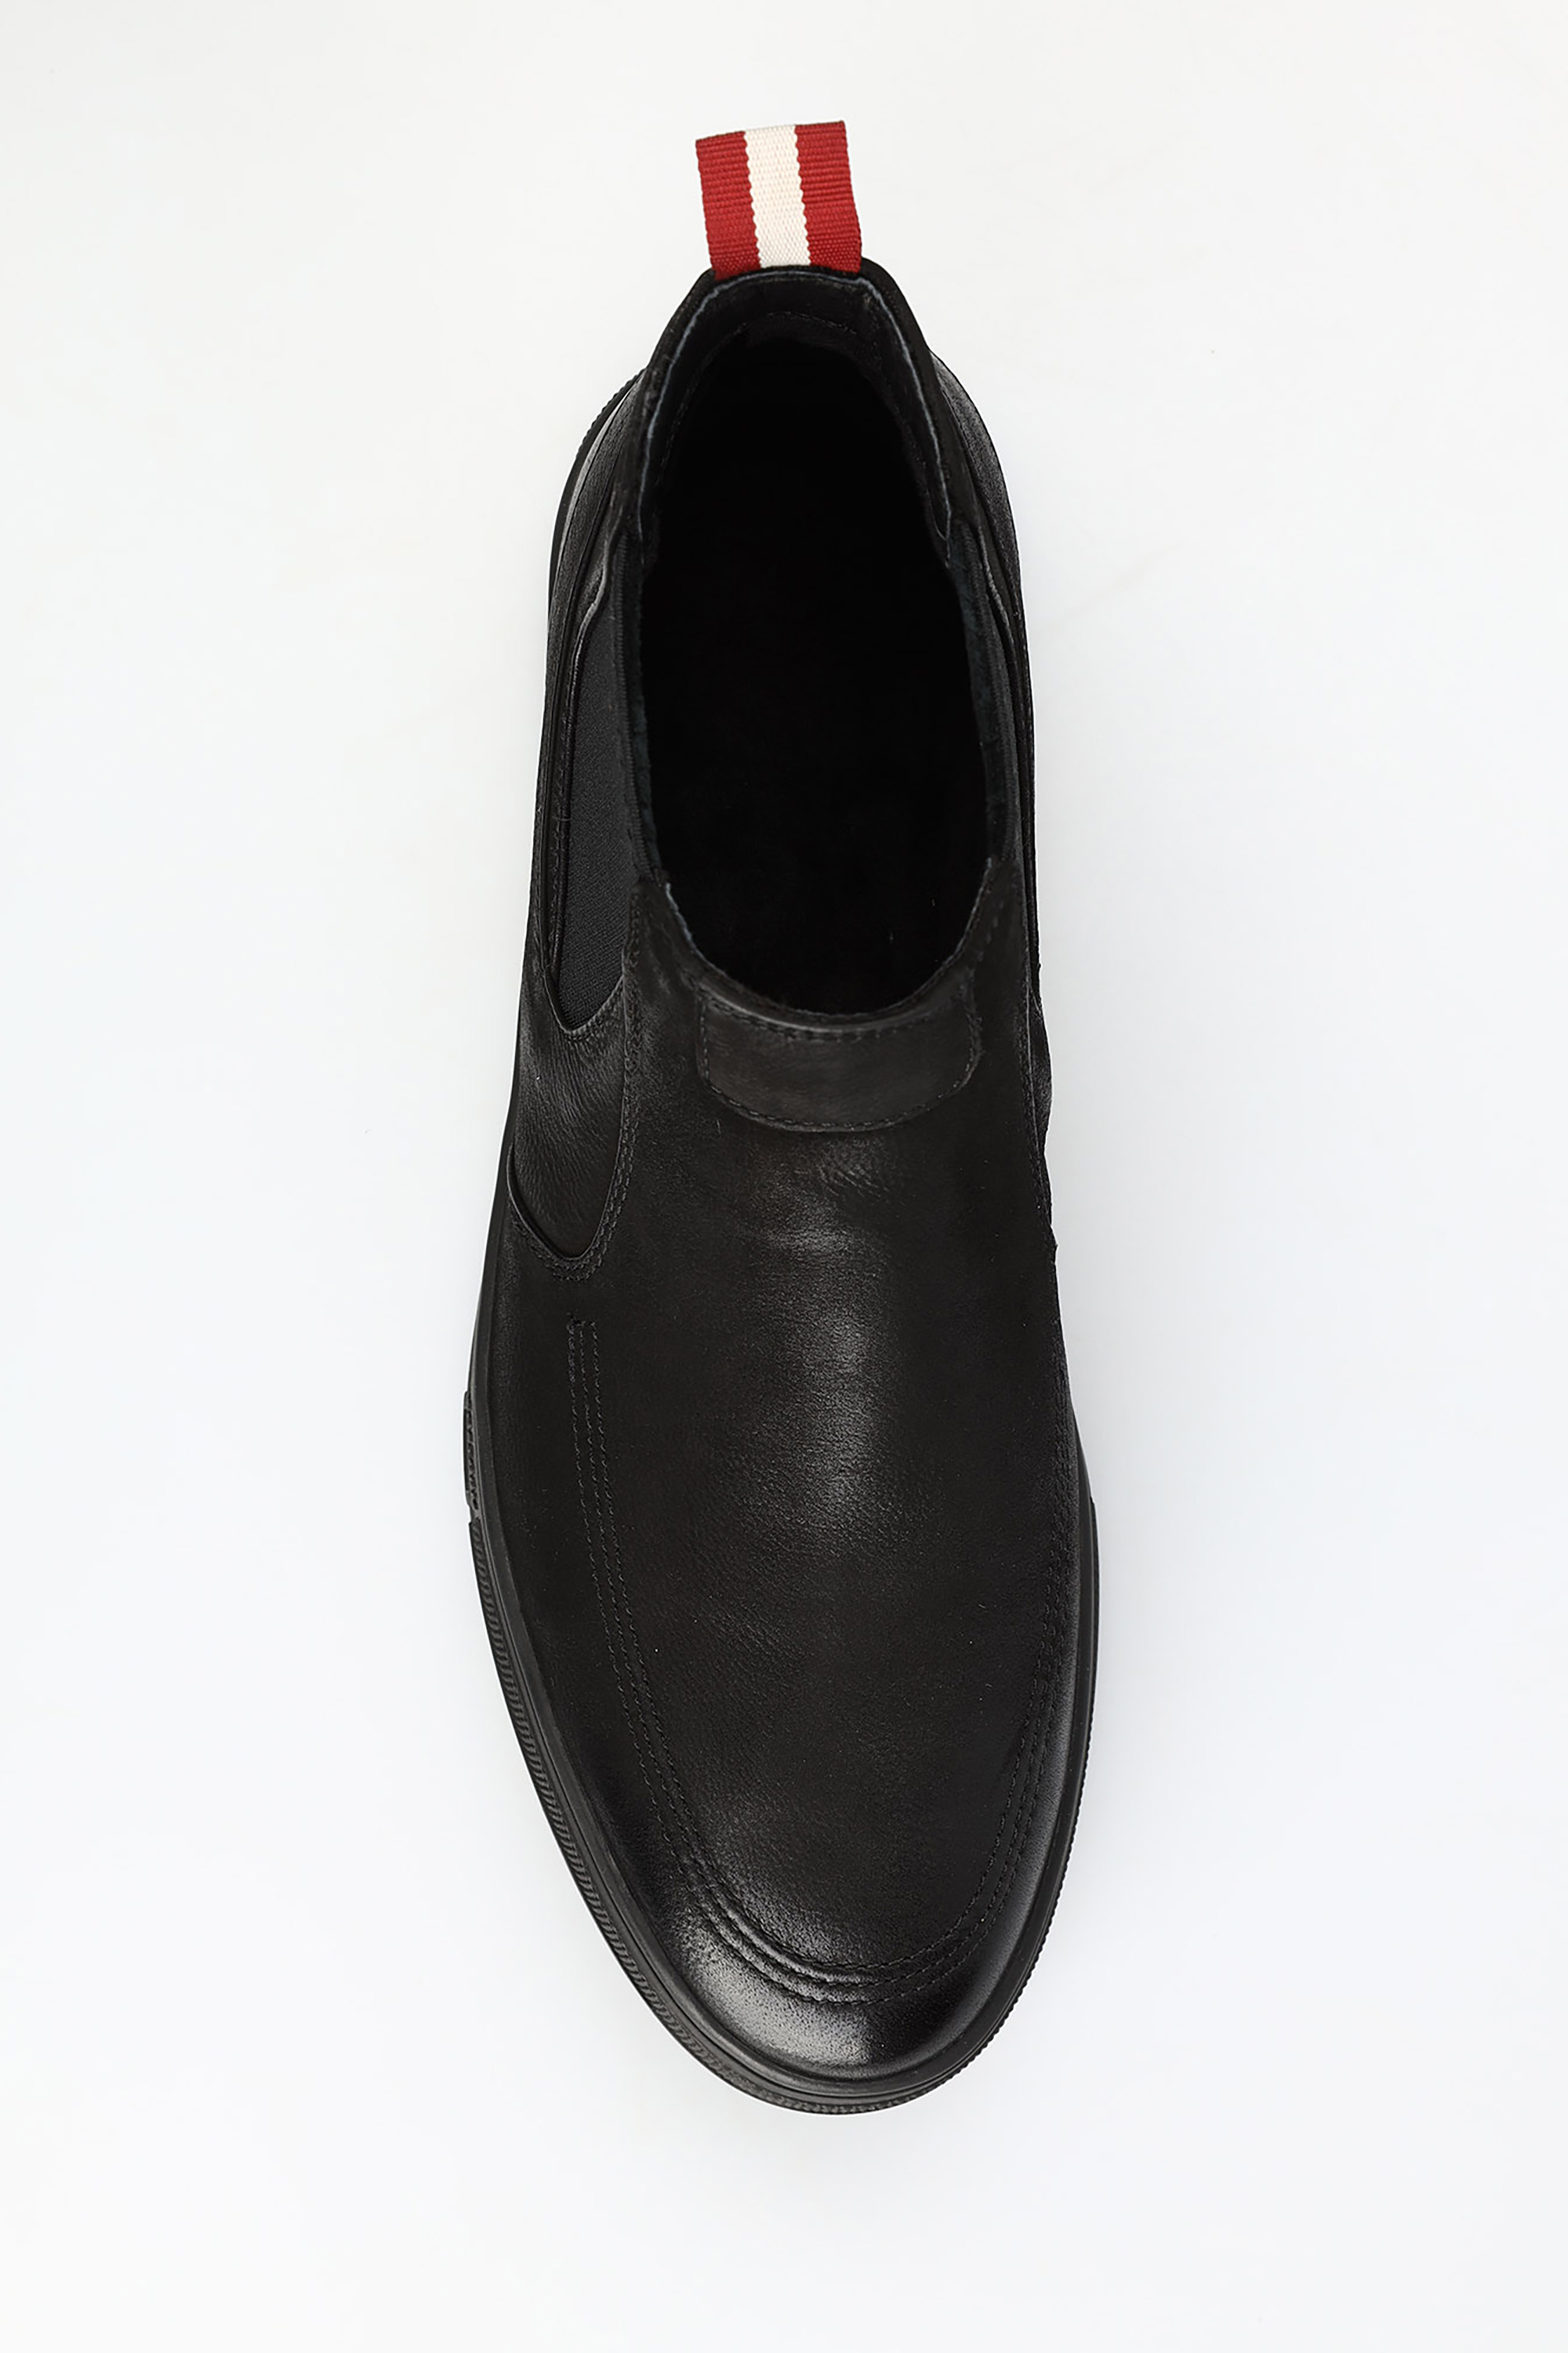 GAM229-7 Ботинки Graciana Черный